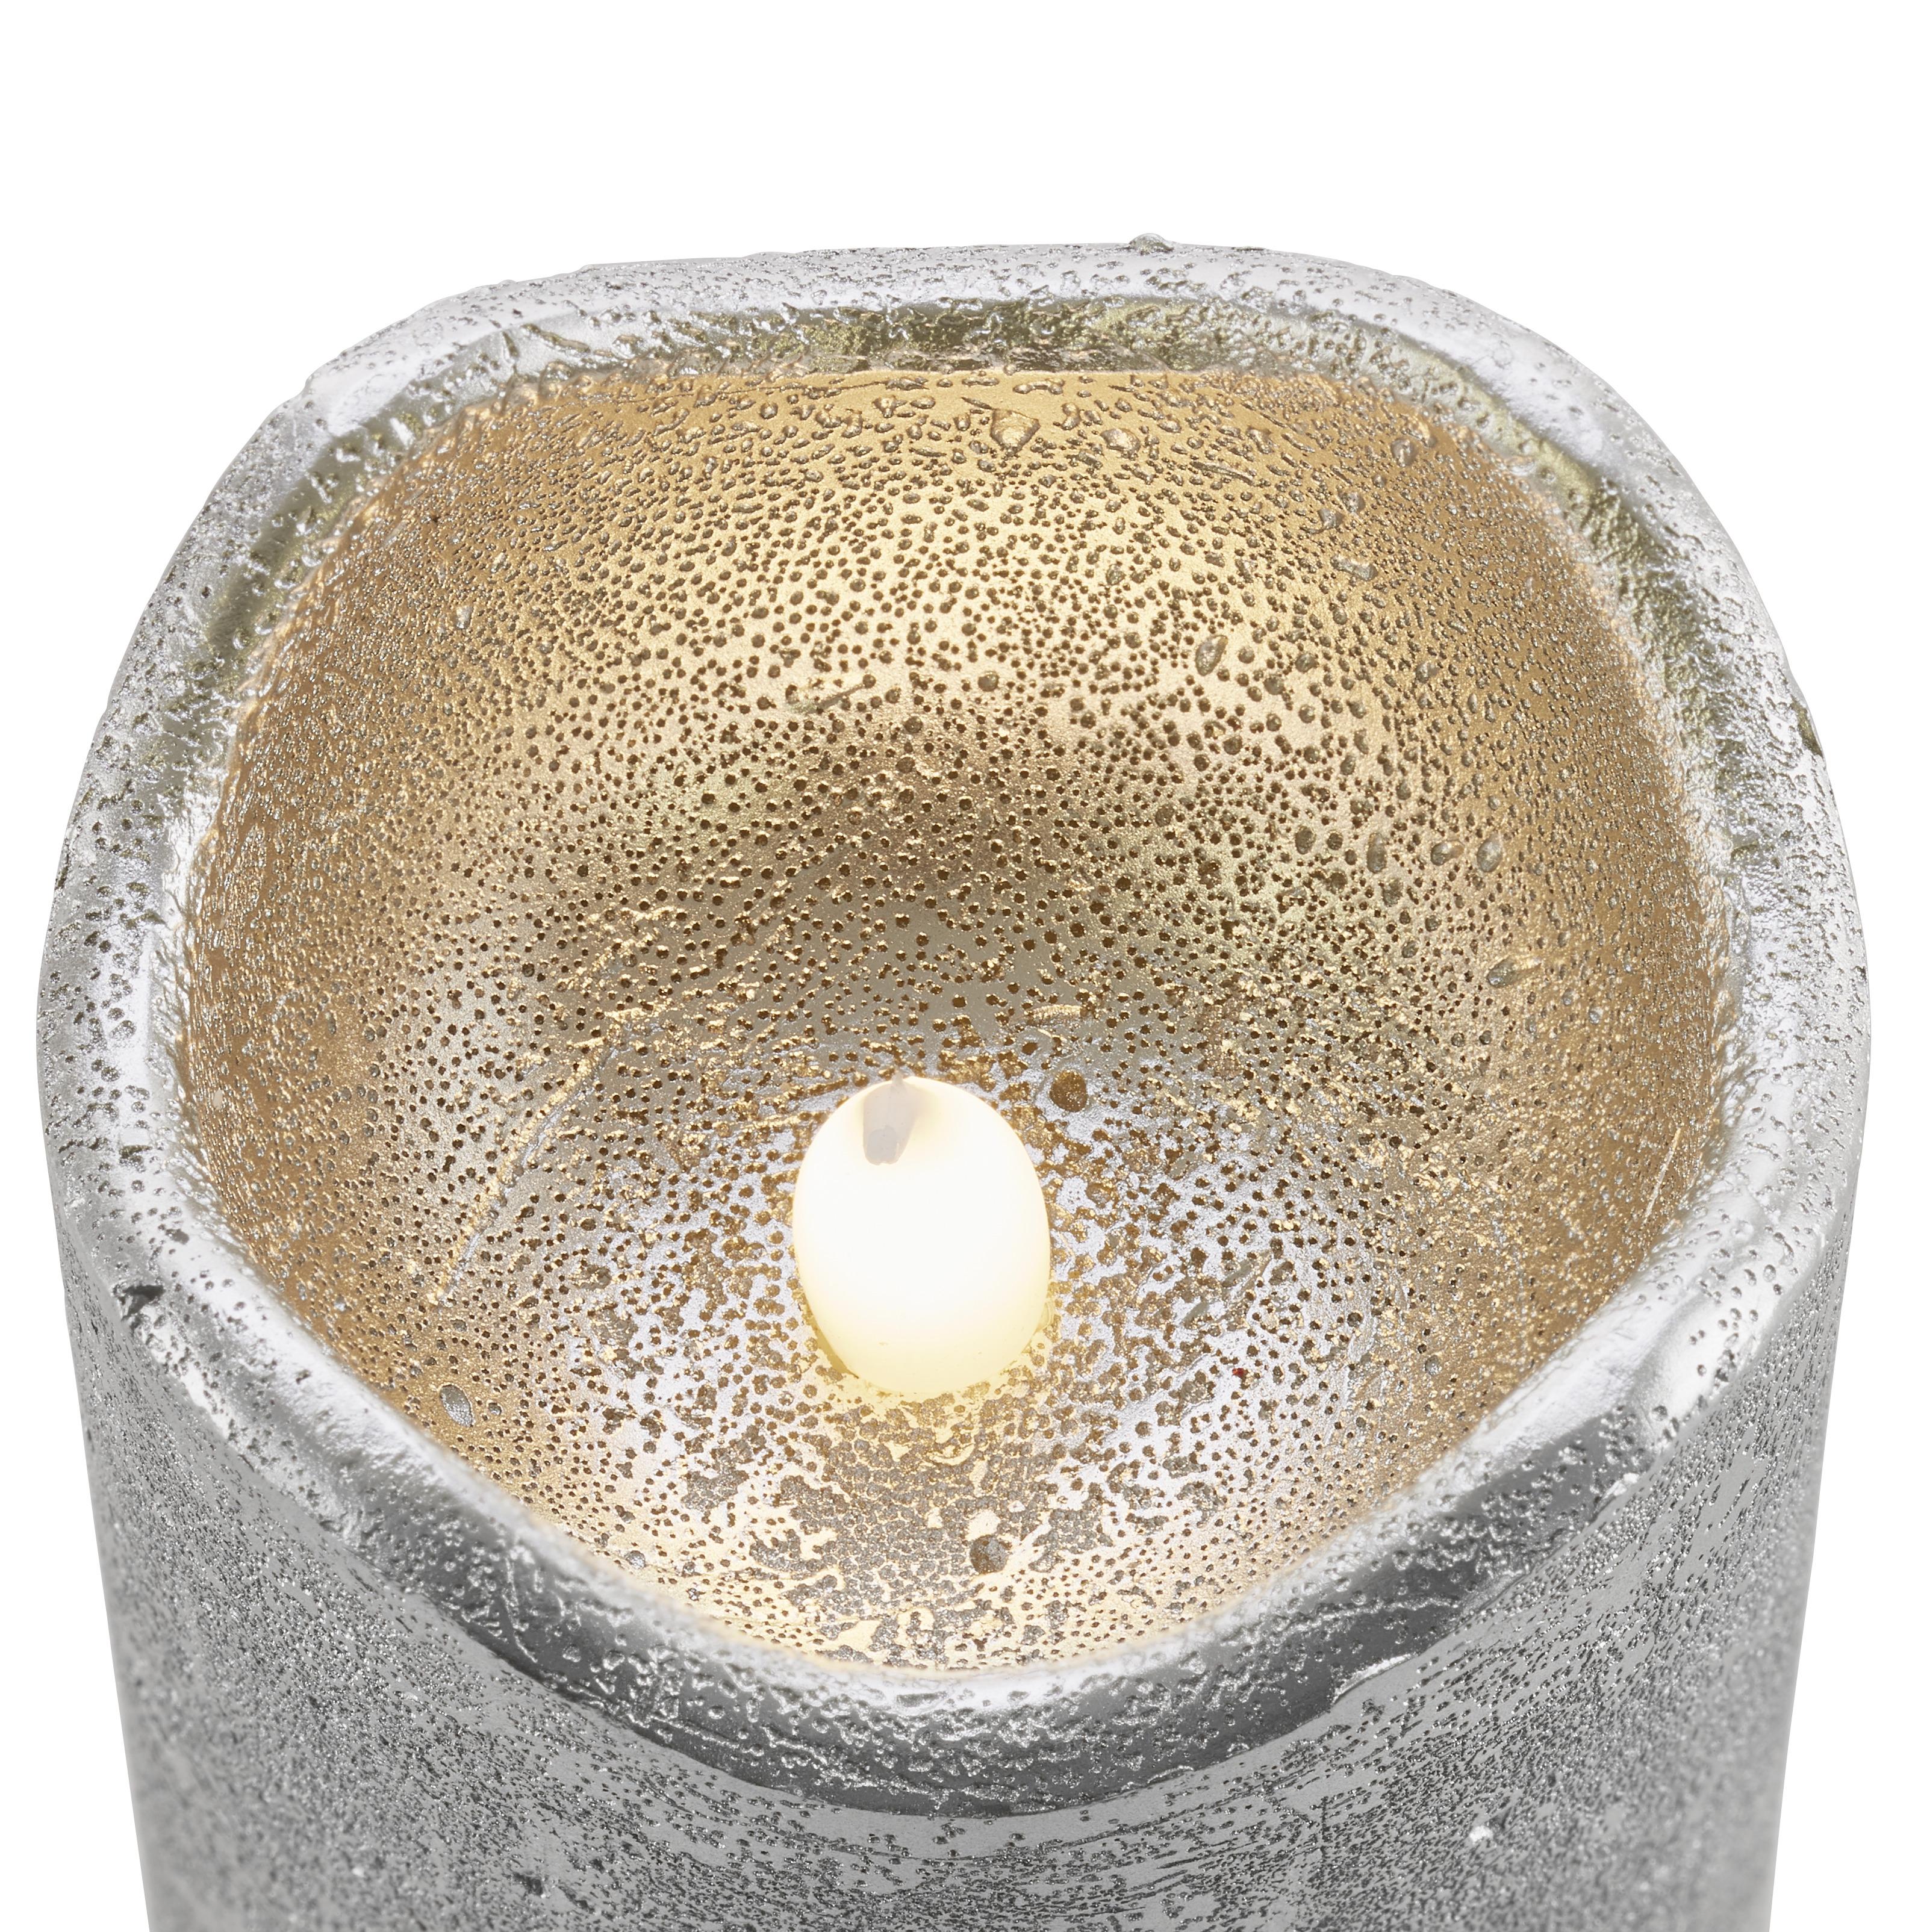 LED-Kerze Loa in Silberfarben - Silberfarben, MODERN, Naturmaterialien (15cm) - Bessagi Home